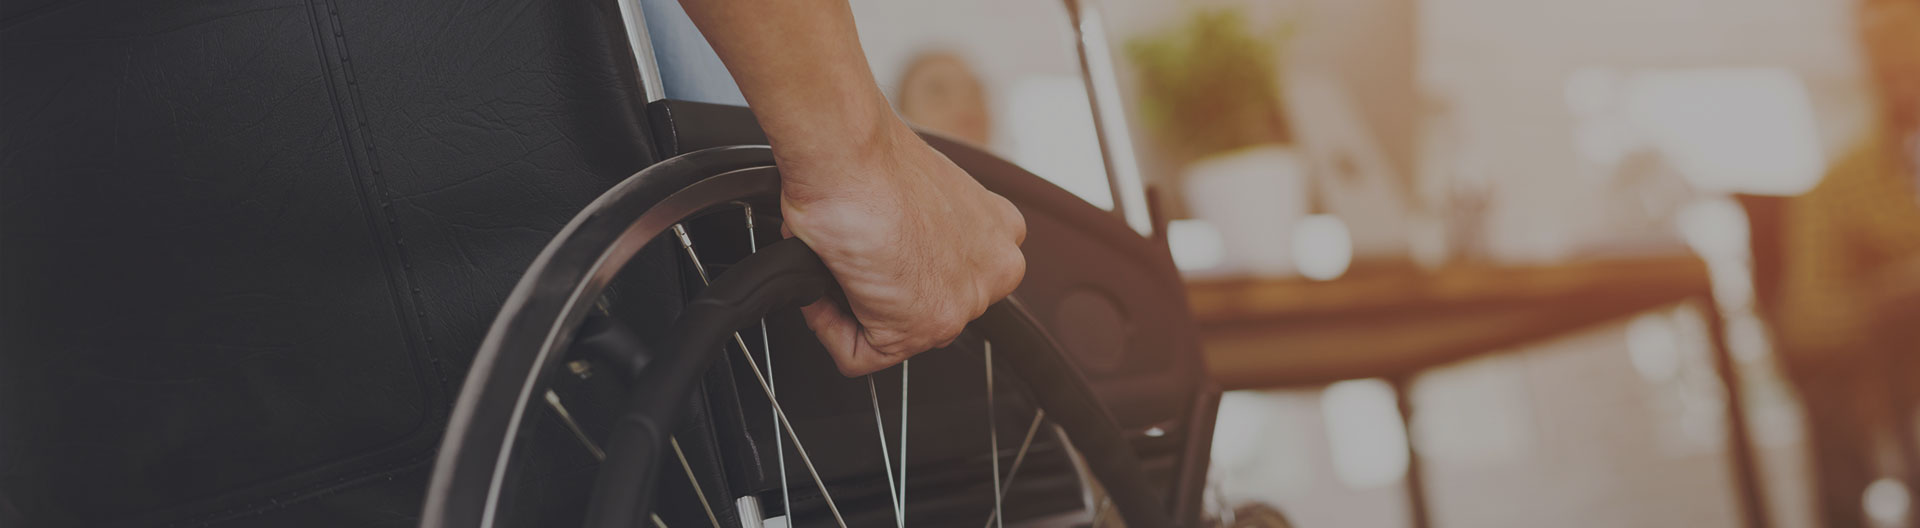 close-up-of-a-man-on-a-wheelchair-after-an-injury-flagstaff-az